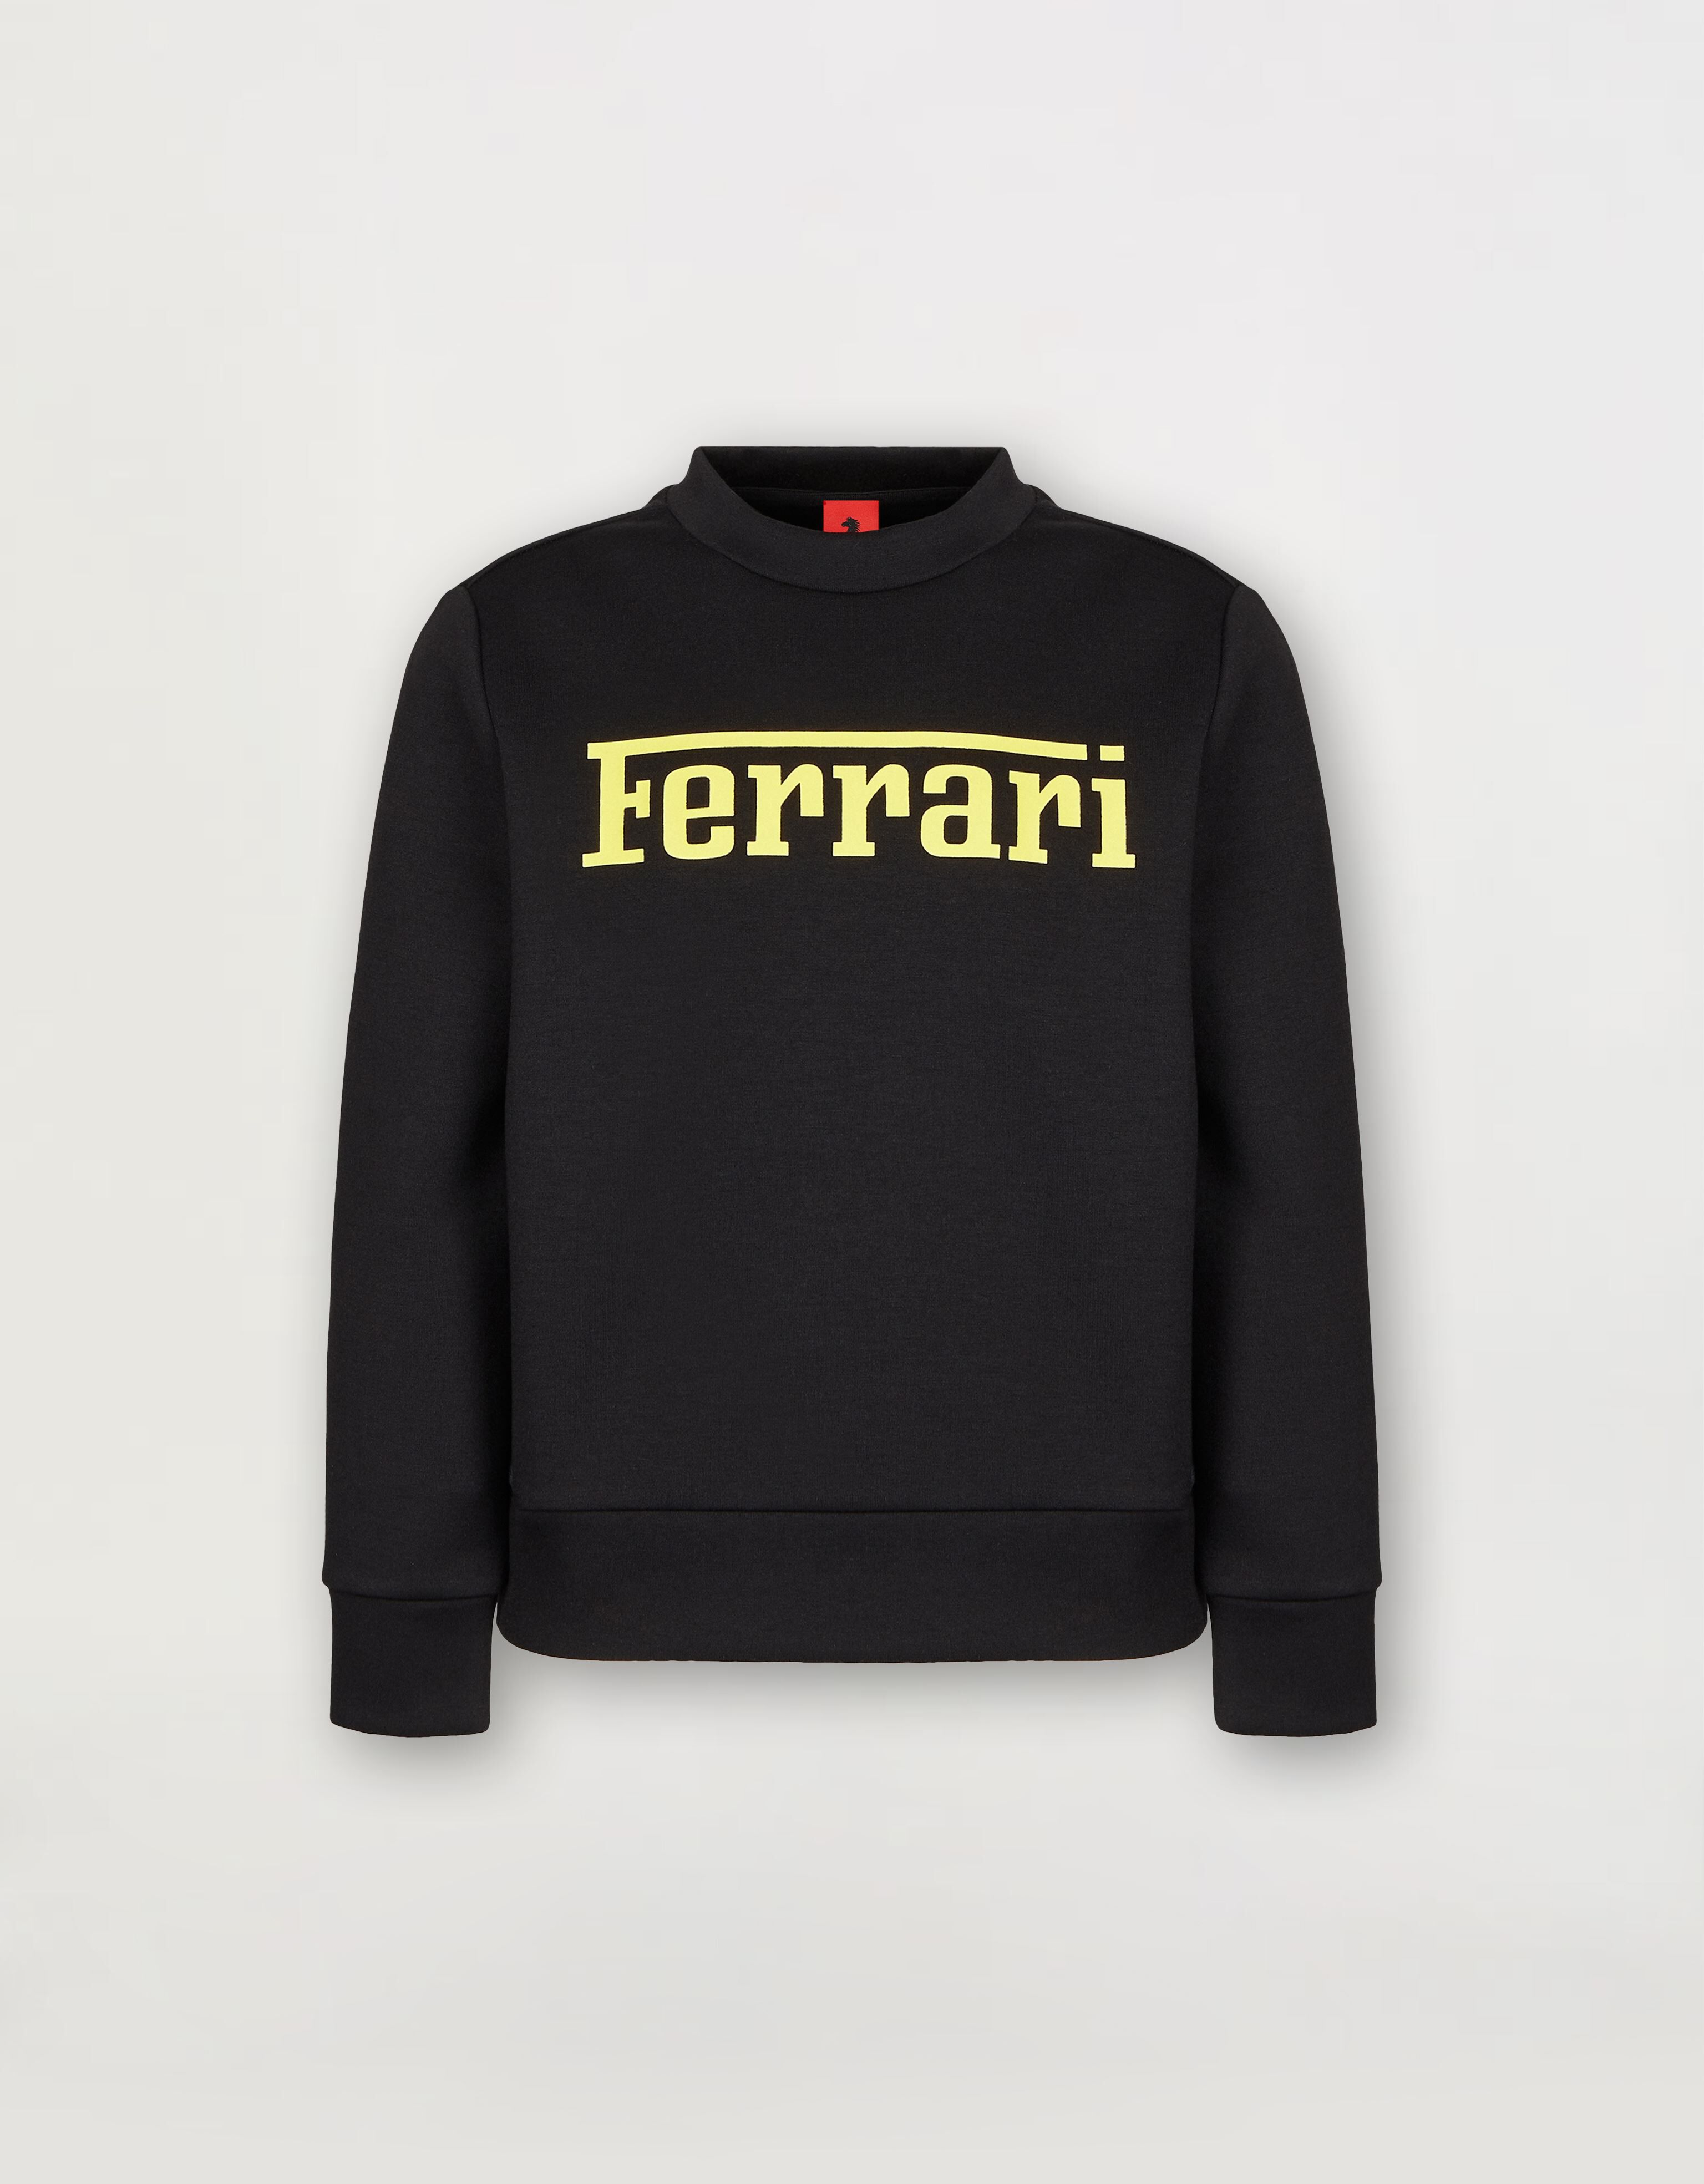 Ferrari Children’s sweatshirt in recycled scuba fabric with large Ferrari logo Azure 20159fK